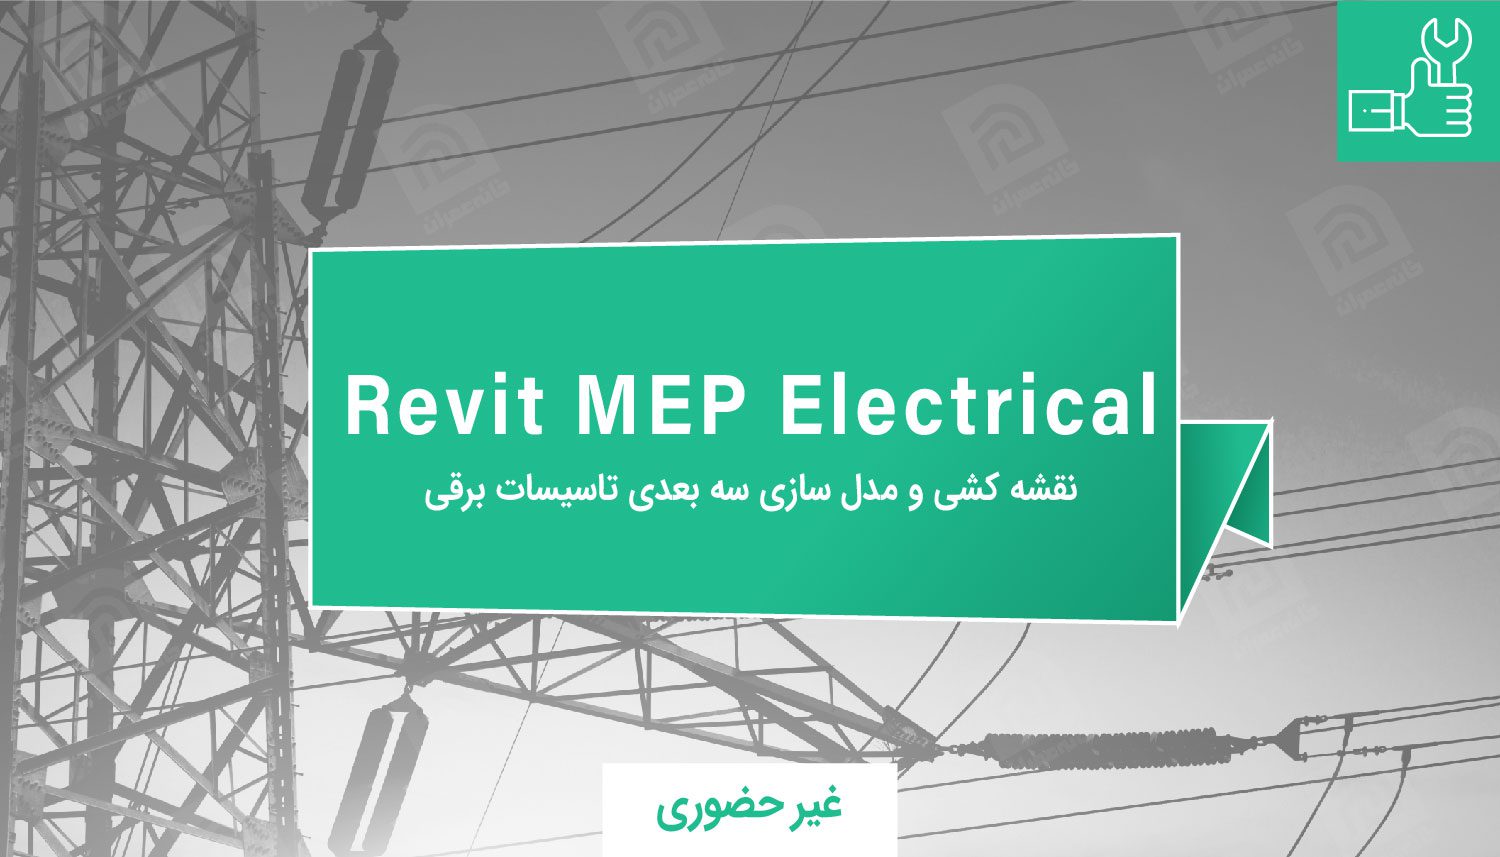 آموزش Revit MEP Electrical